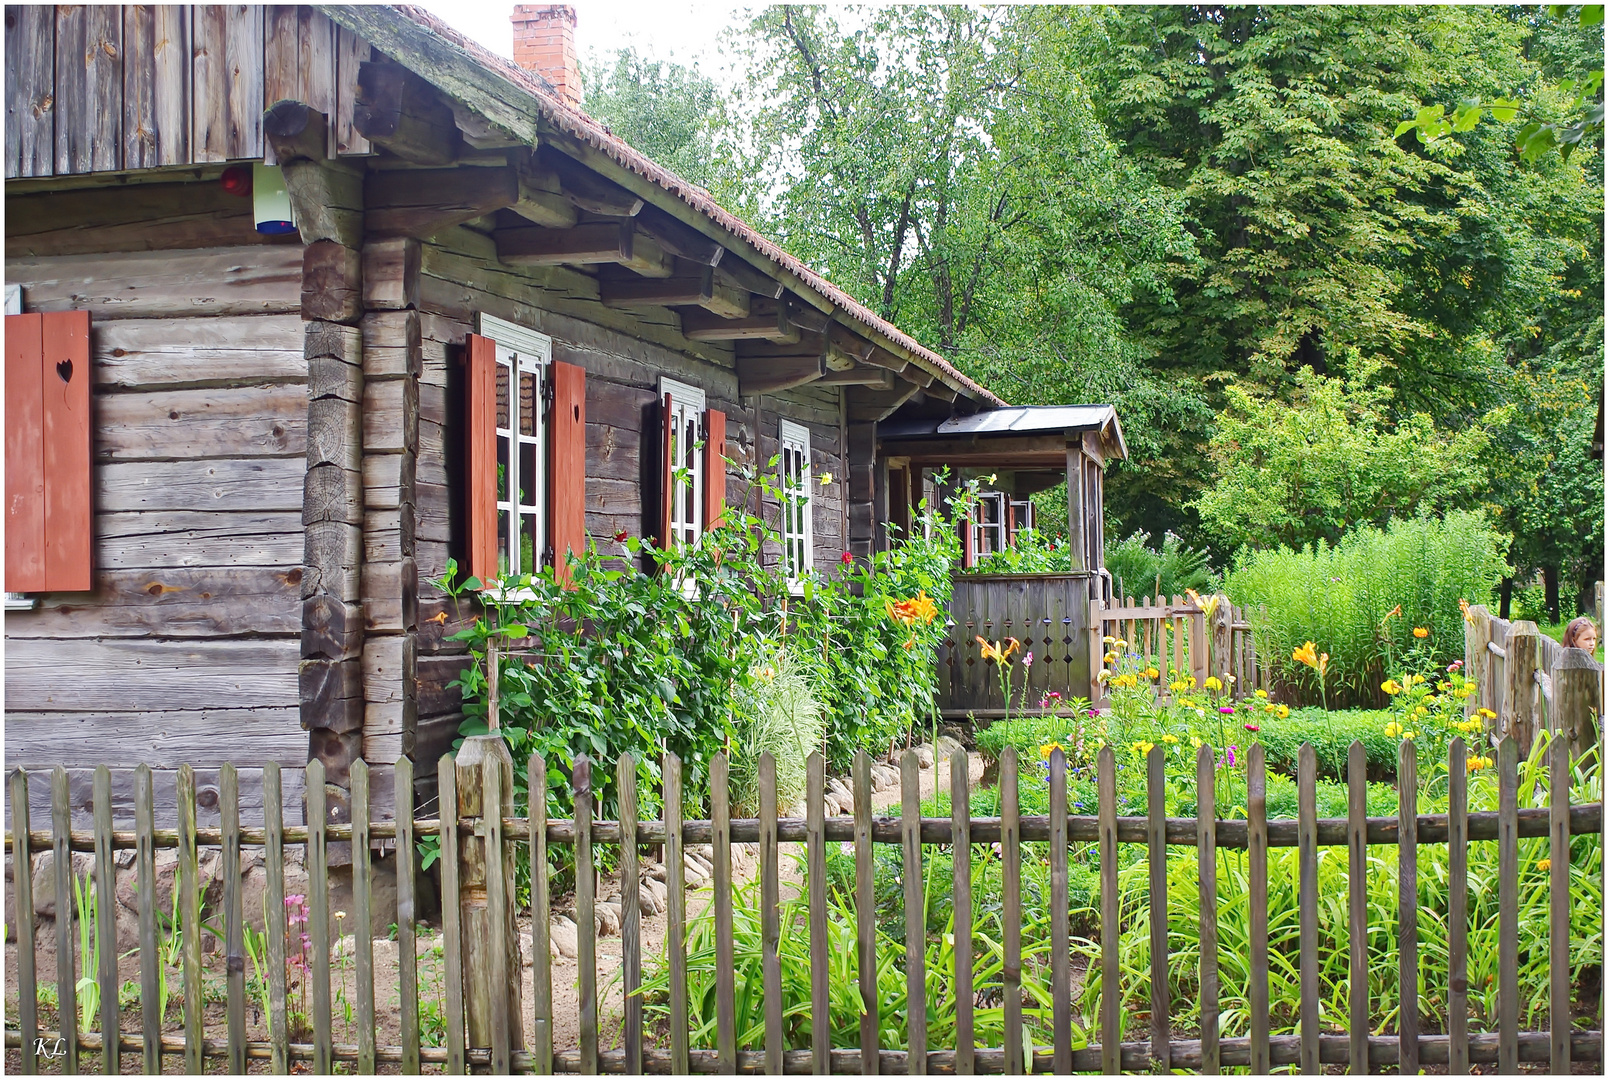 Bauernhaus in Litauen.